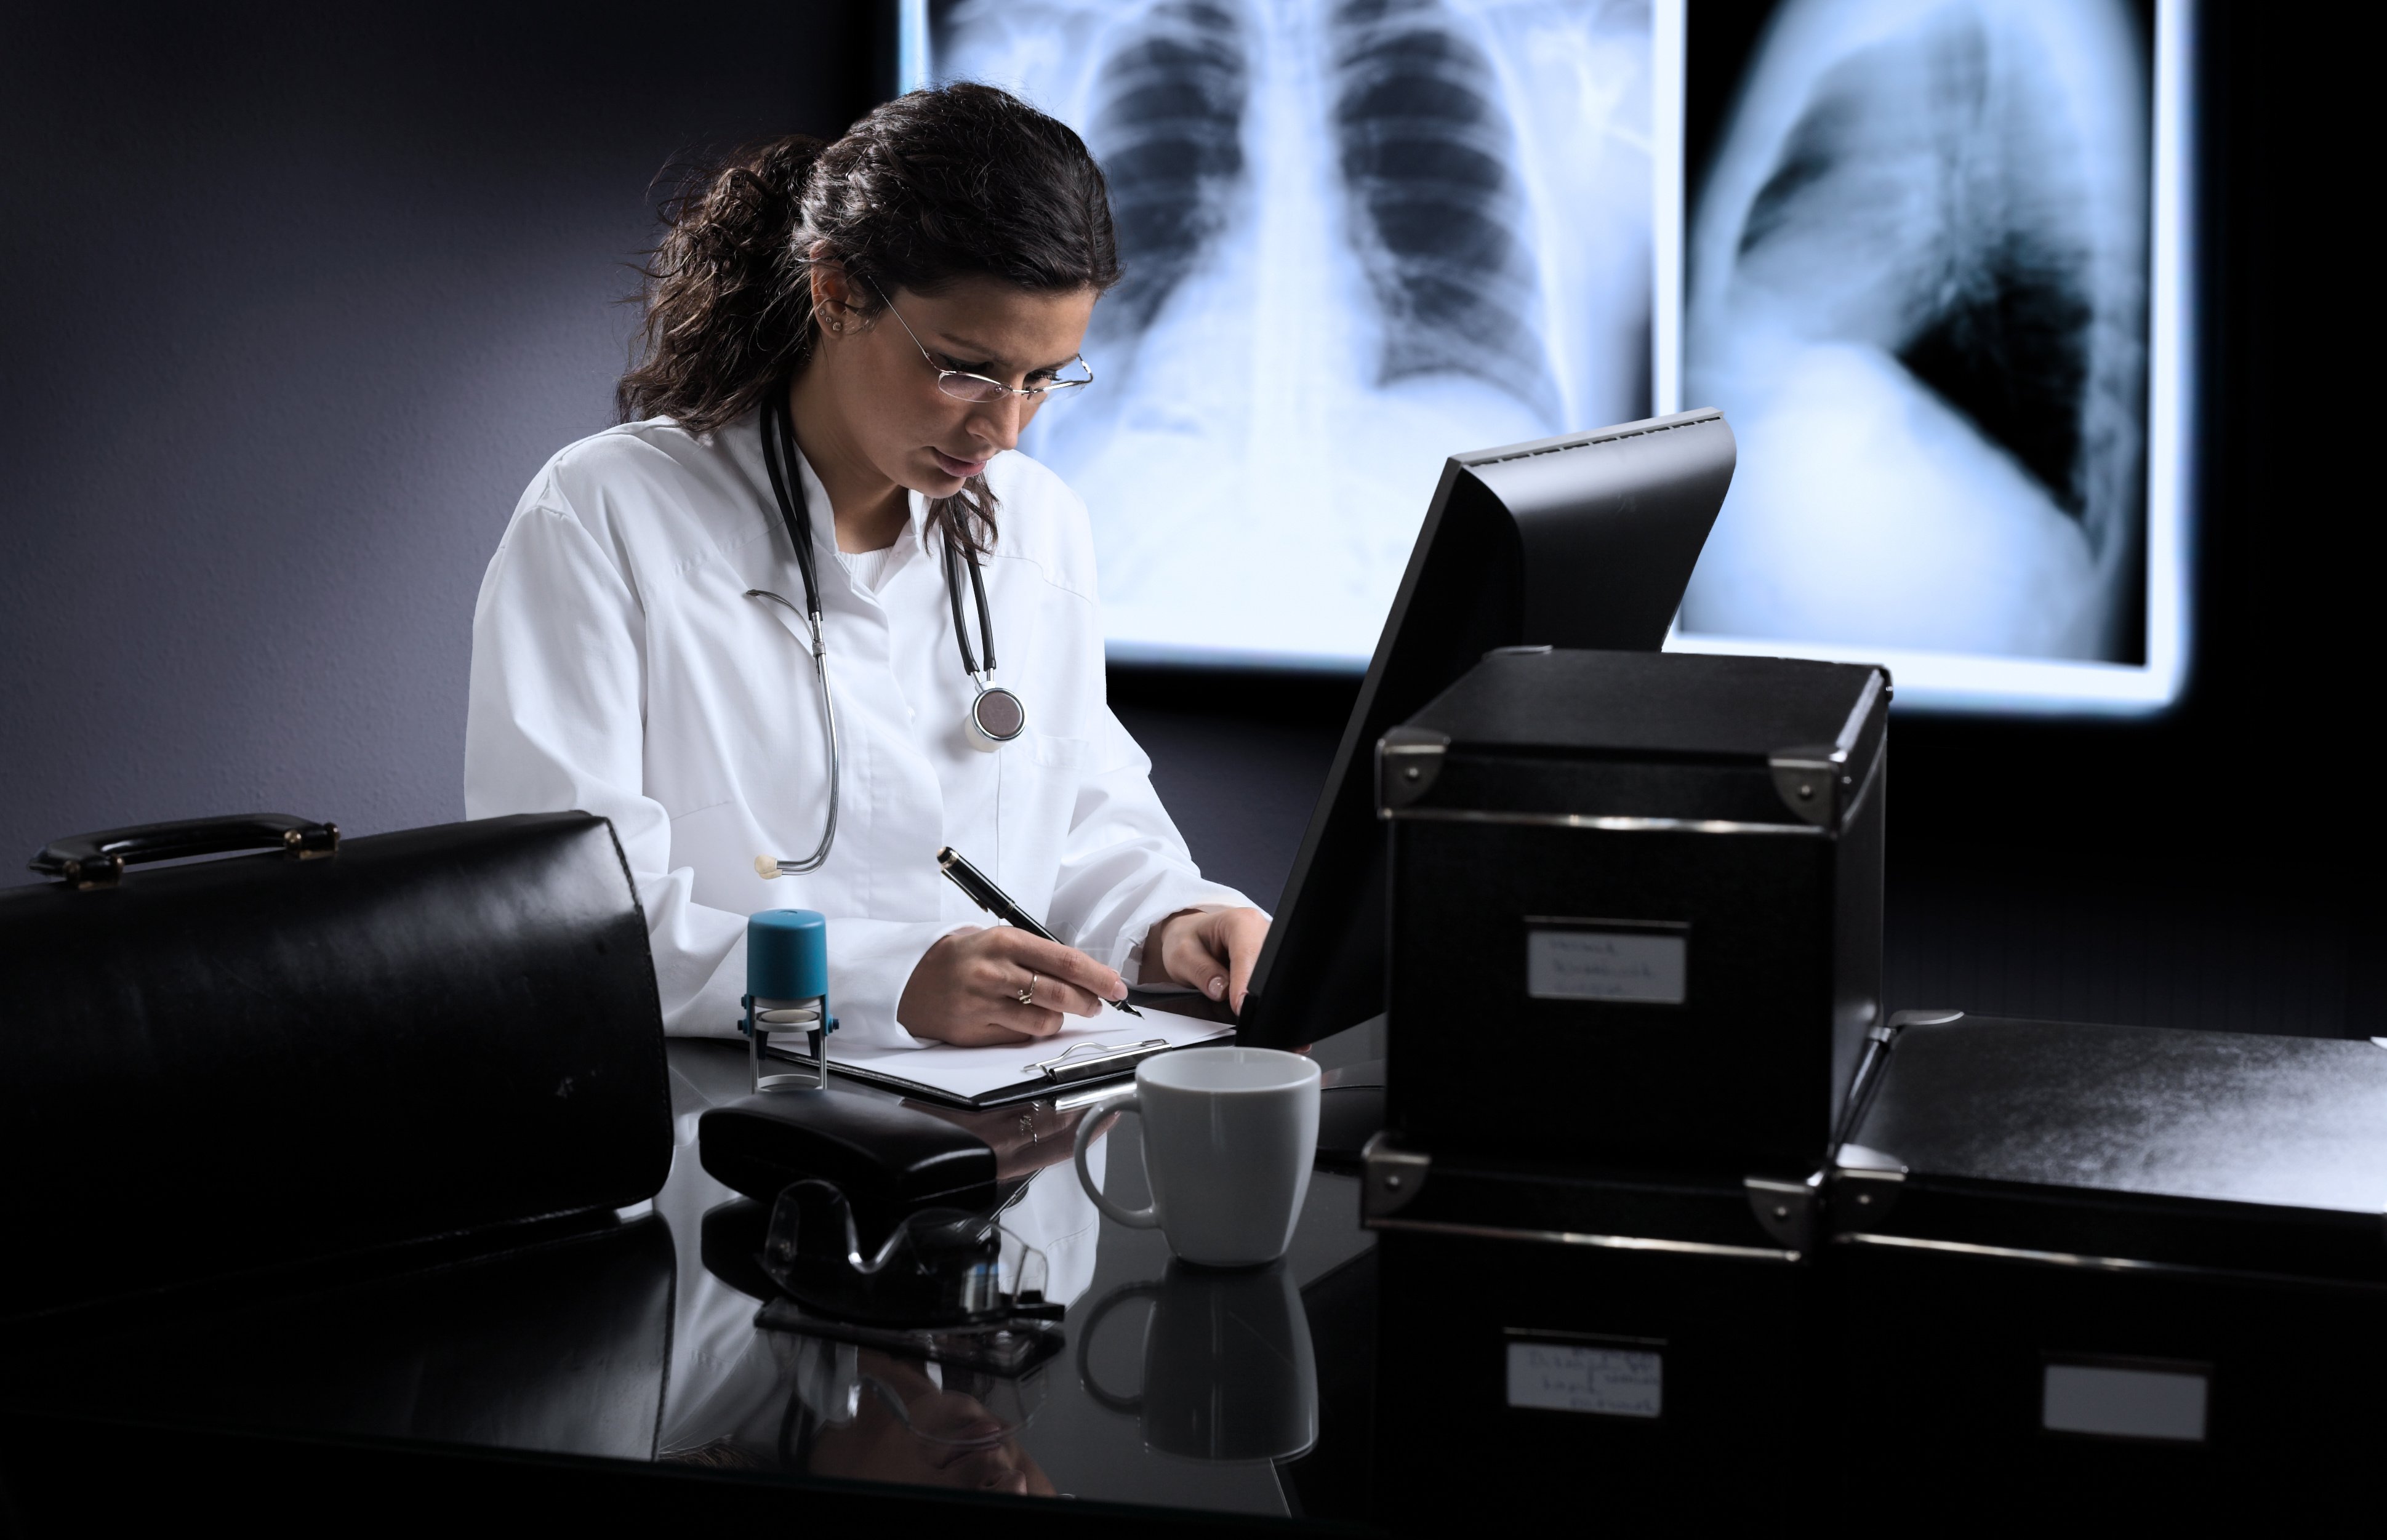 Поздравление С Международным Днем Рентгенолога